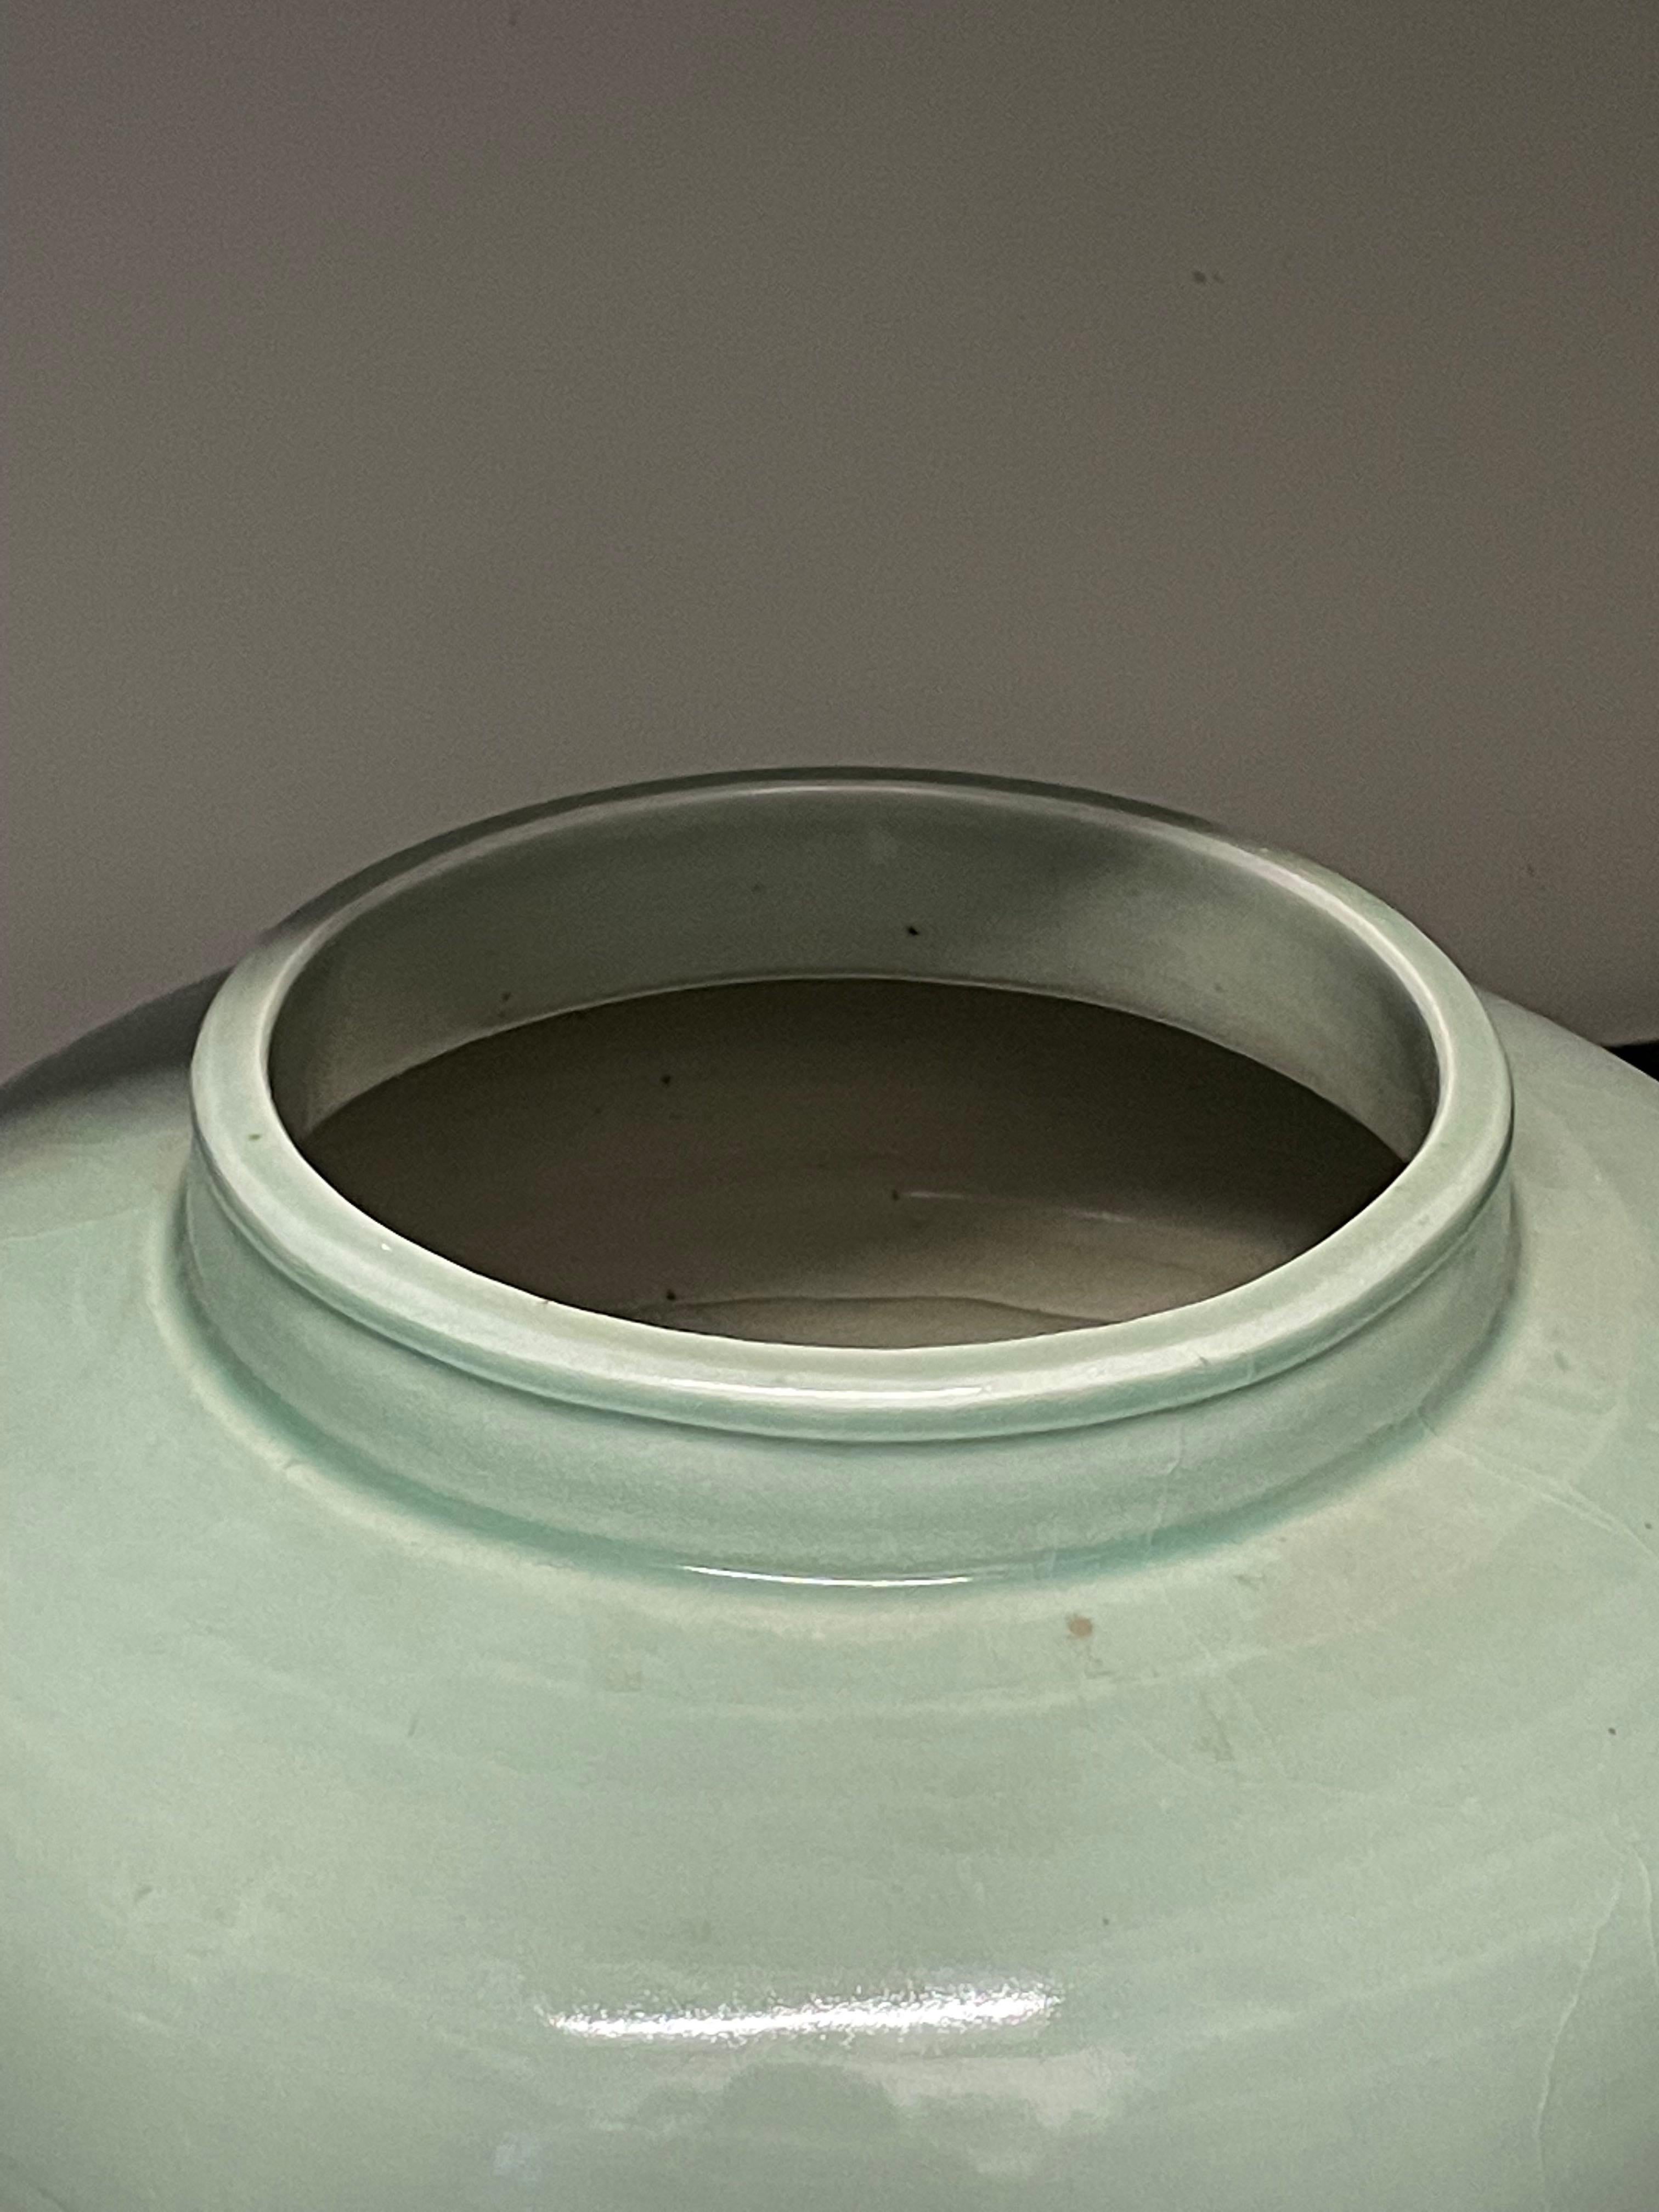 Zeitgenössische chinesische Vase aus gewaschenem Türkis mit Glasur.
Die Glasur verleiht der Vase das Aussehen eines verwitterten Aussehens.
Runde geschwungene Form mit großer Öffnung.
Es sind zwei Exemplare erhältlich.